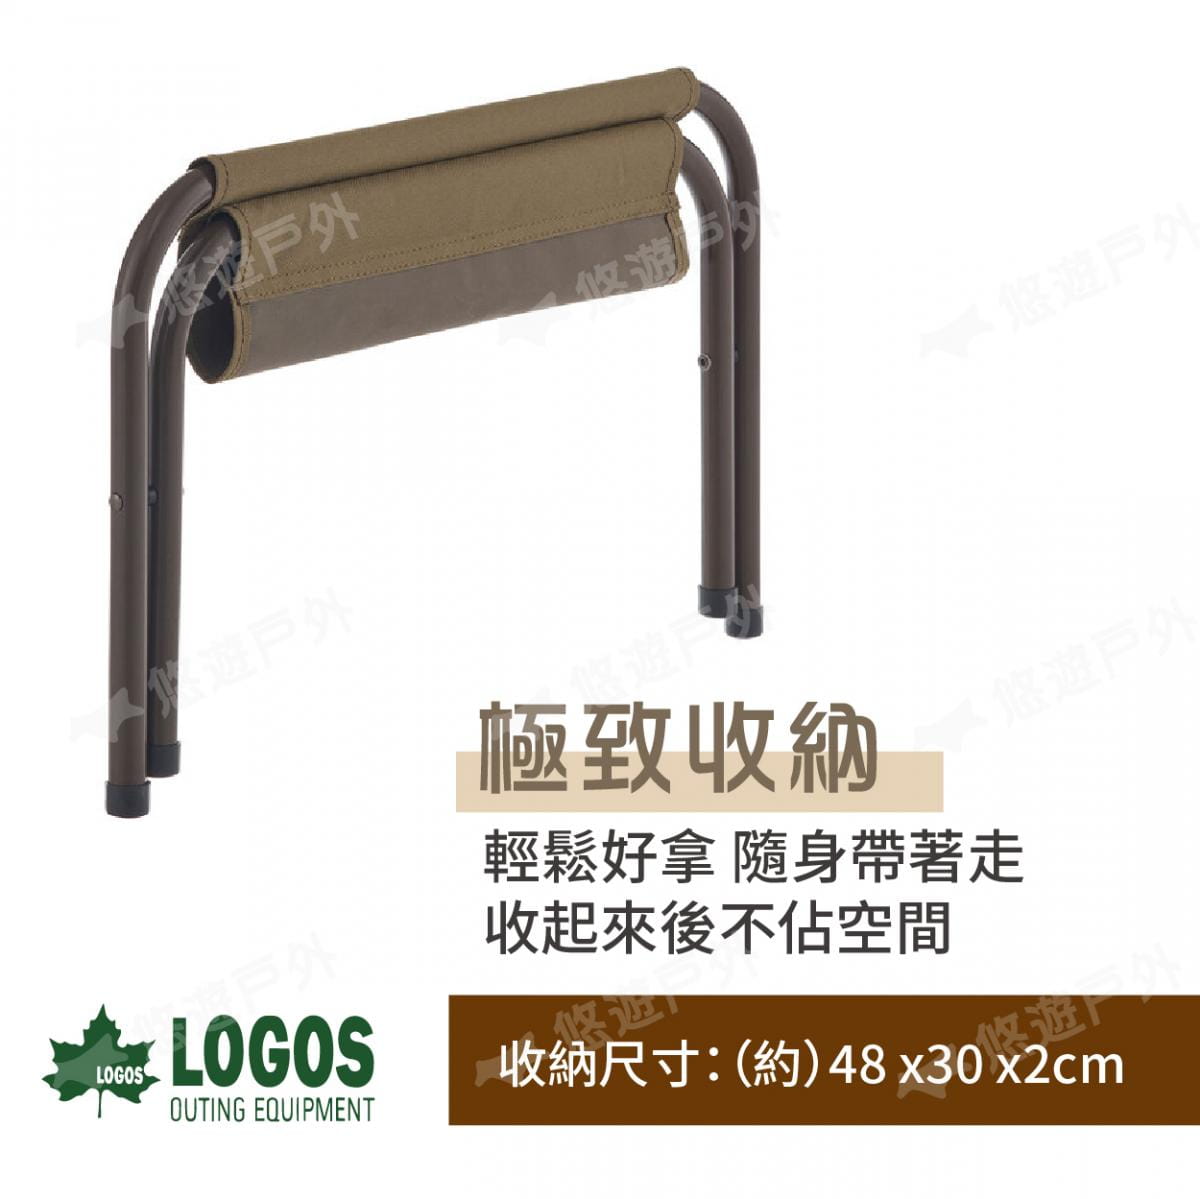 【LOGOS】兩用工具架椅凳 LG73188032 (悠遊戶外) 3